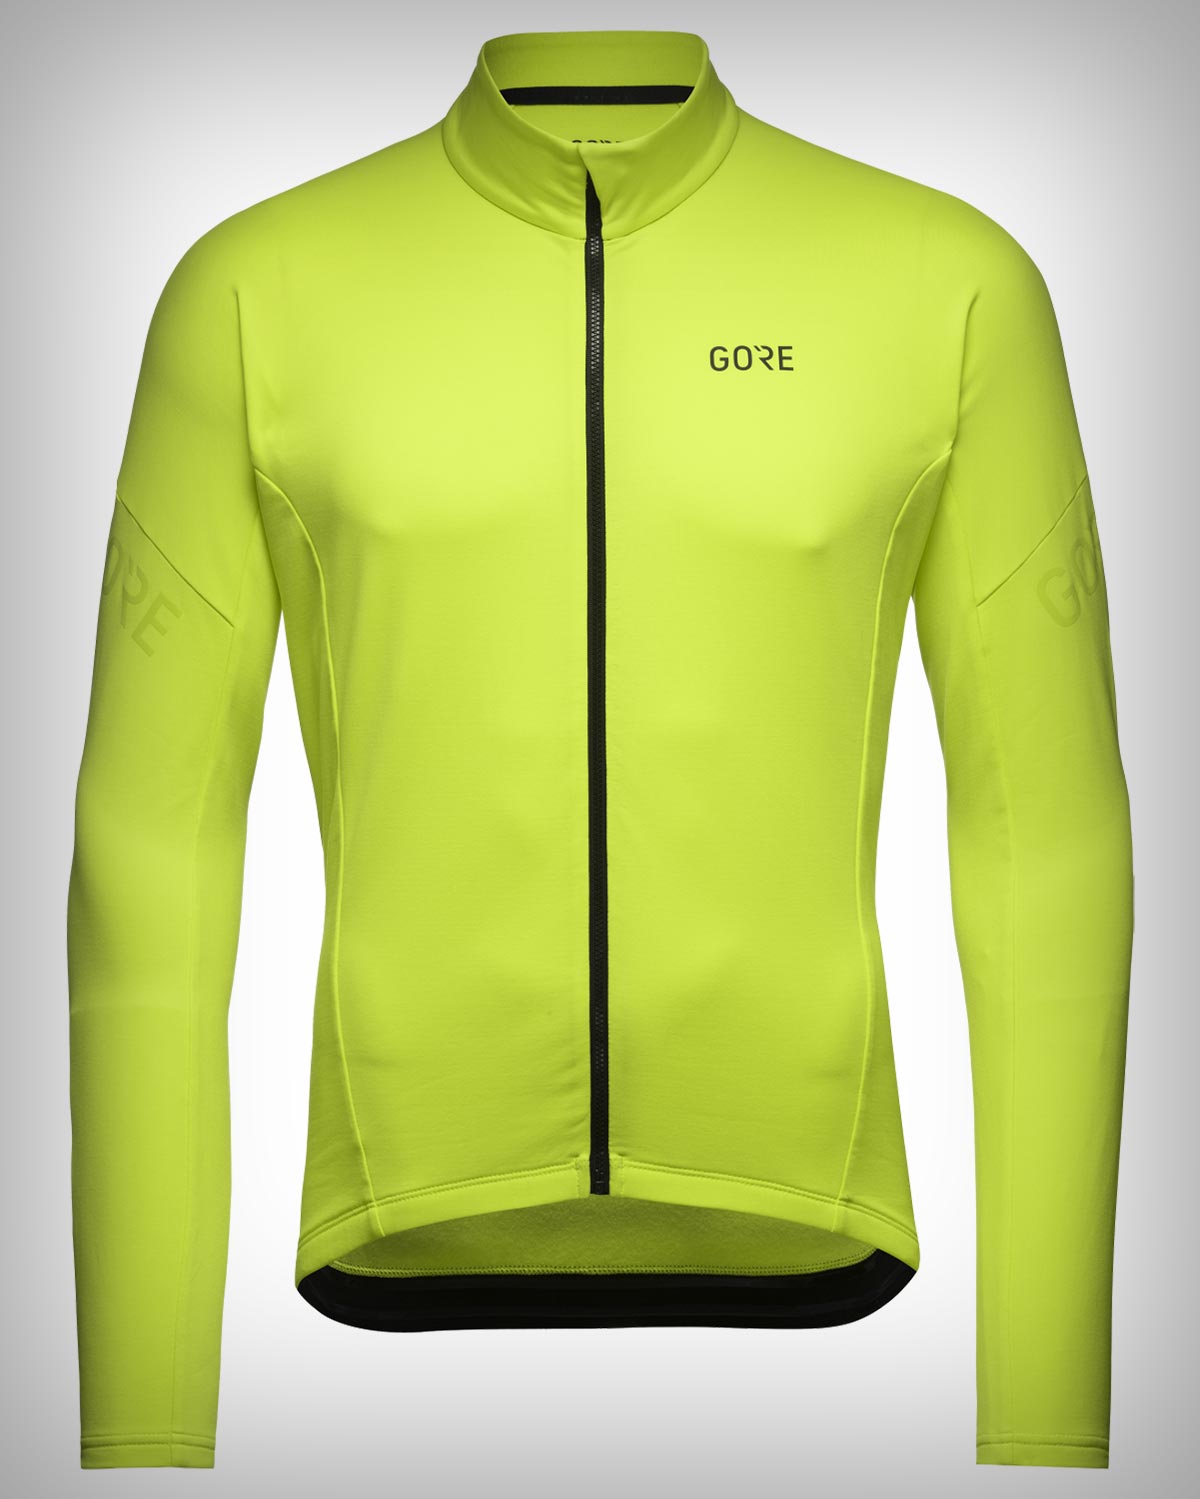 Cazando ofertas: el maillot Gorewear C3 Thermo con forro polar, a su mejor precio en Amazon